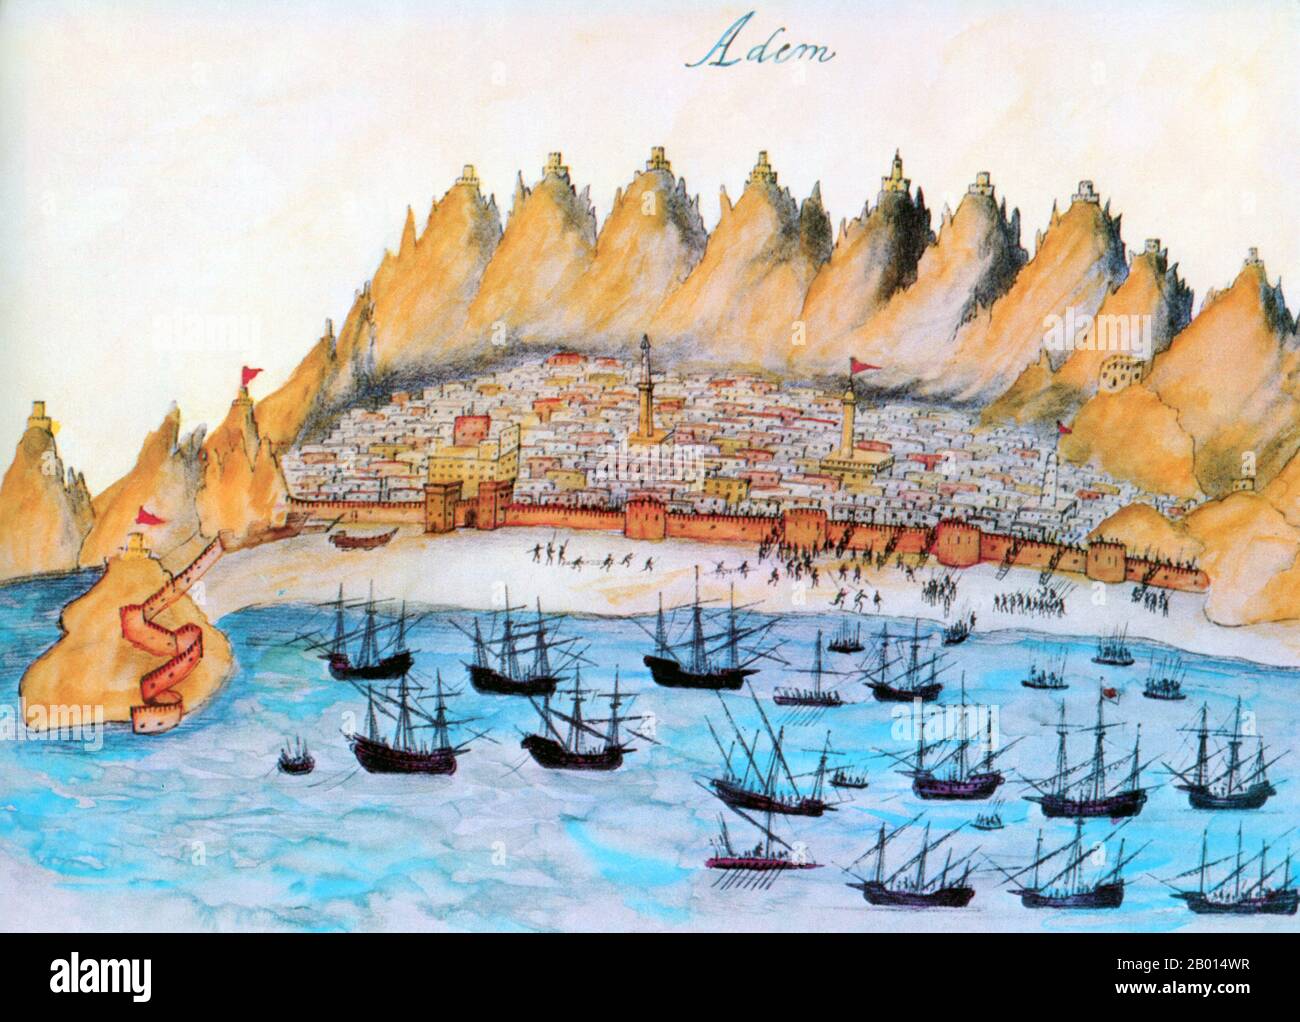 Jemen/Portugal: Im Februar 1513 greifen die Marinestreitkräfte von Albuquerque den arabischen Hafen Aden an. Farbige Holzschnitt-Illustration aus 'Lendas da India' (Legends of India) von Gaspa Correia (c. 1496-1563), 16. Jahrhundert. Afonso de Albuquerque (1453-1515) war ein portugiesischer Admiral, dessen militärische und administrative Errungenschaften als zweiter Gouverneur von Portugiesisch-Indien das portugiesische Kolonialreich im Indischen Ozean begründeten. Er gilt allgemein als militärisches Genie. Stockfoto